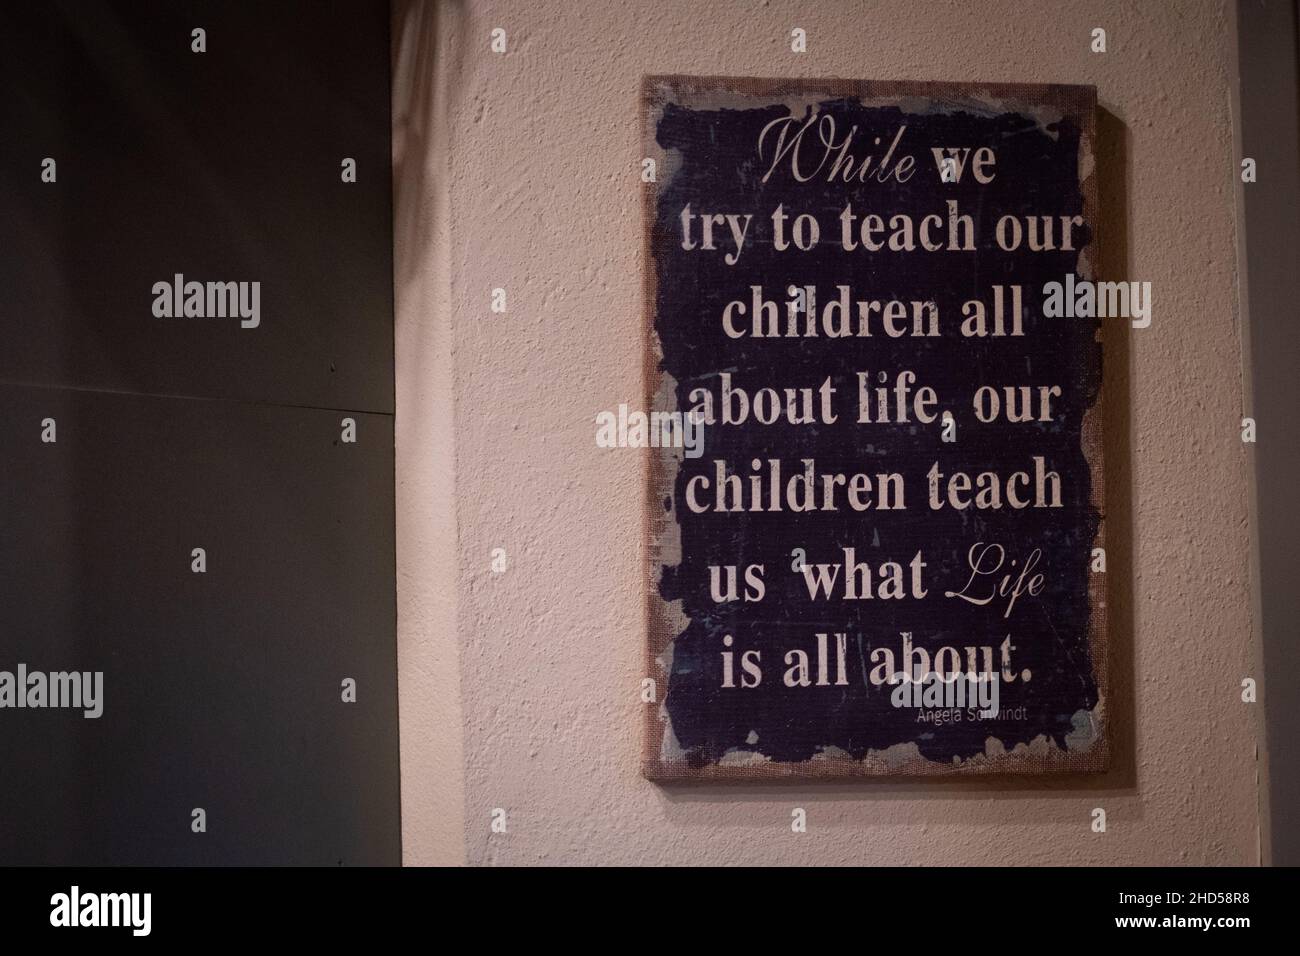 Firme en una pared diciendo 'Mientras tratamos de enseñar a nuestros niños todo acerca de la vida, nuestros niños nos enseñan de qué se trata la vida. Lecciones de la vida. Cita Foto de stock